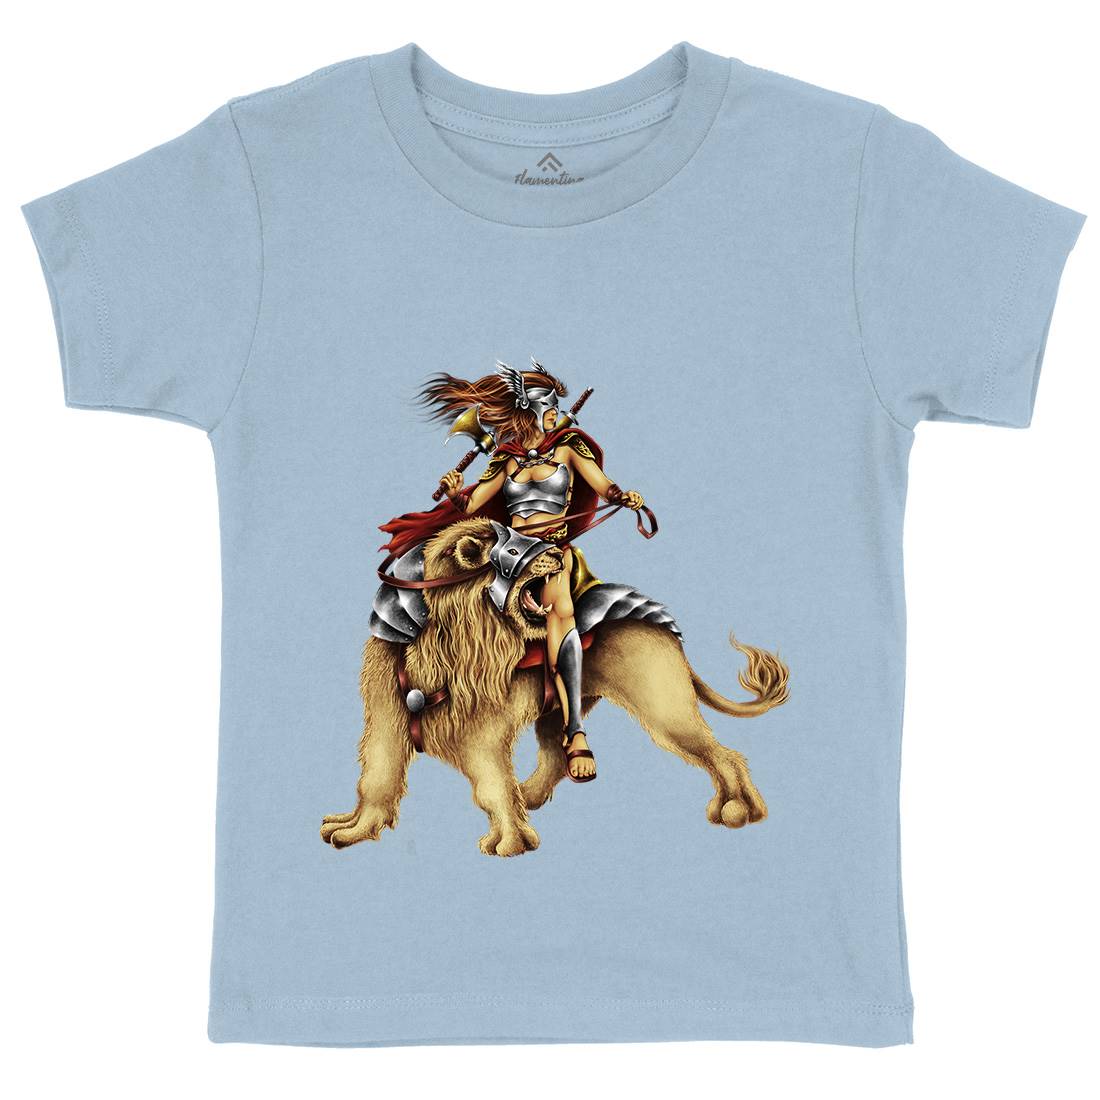 Lion Rider Kids Crew Neck T-Shirt Warriors A483